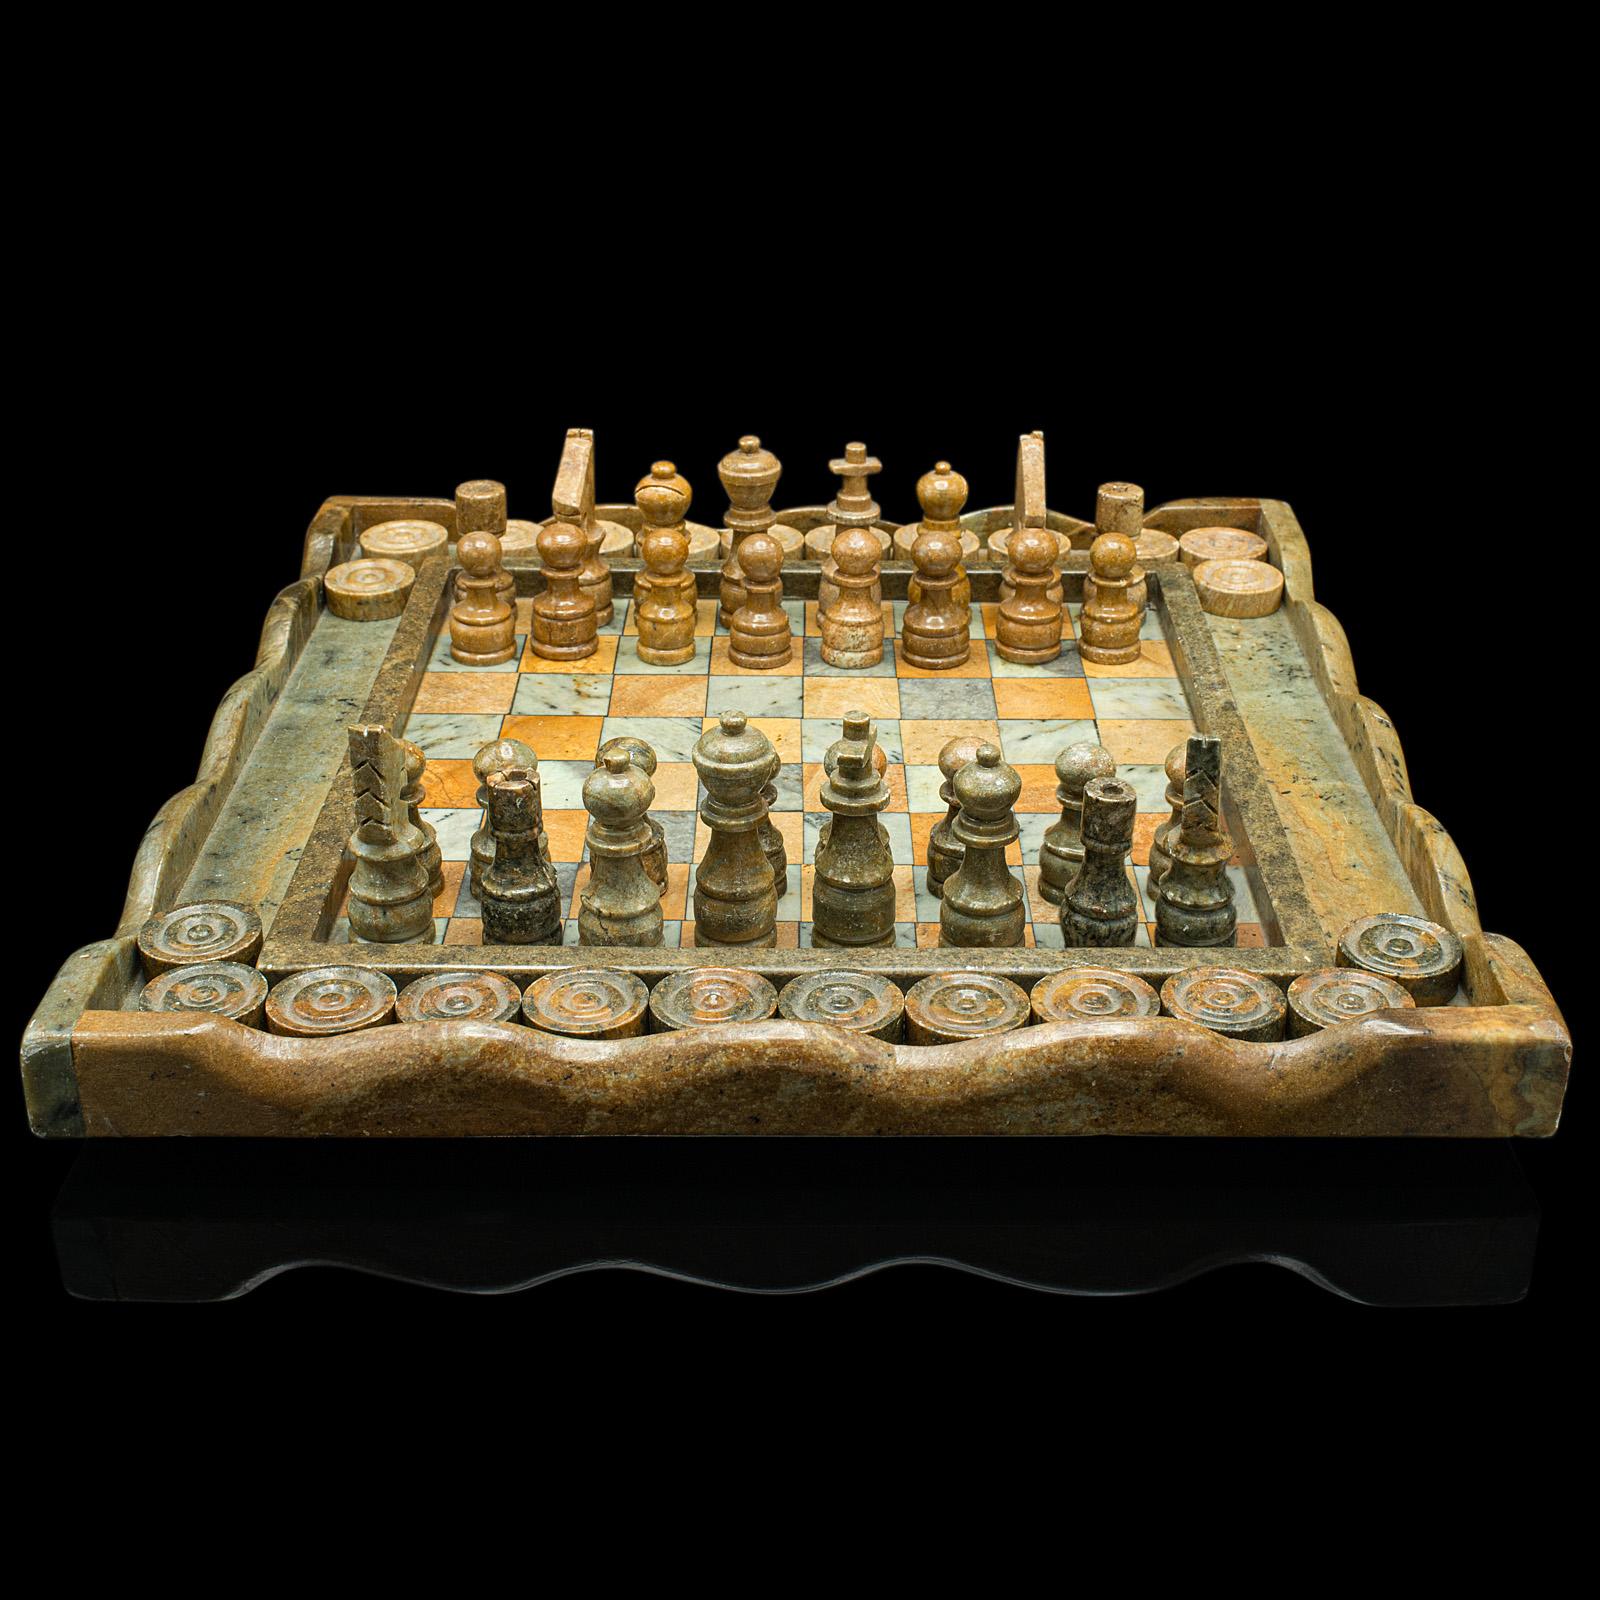 Dies ist ein altes Schach- und Damespielbrett. Ein englisches Spielset aus Hartstein und Marmor, aus dem späten 20. Jahrhundert, um 1970.

Zweifach verwendbares Spielset mit faszinierenden natürlichen Details
Zeigt eine wünschenswerte gealterte